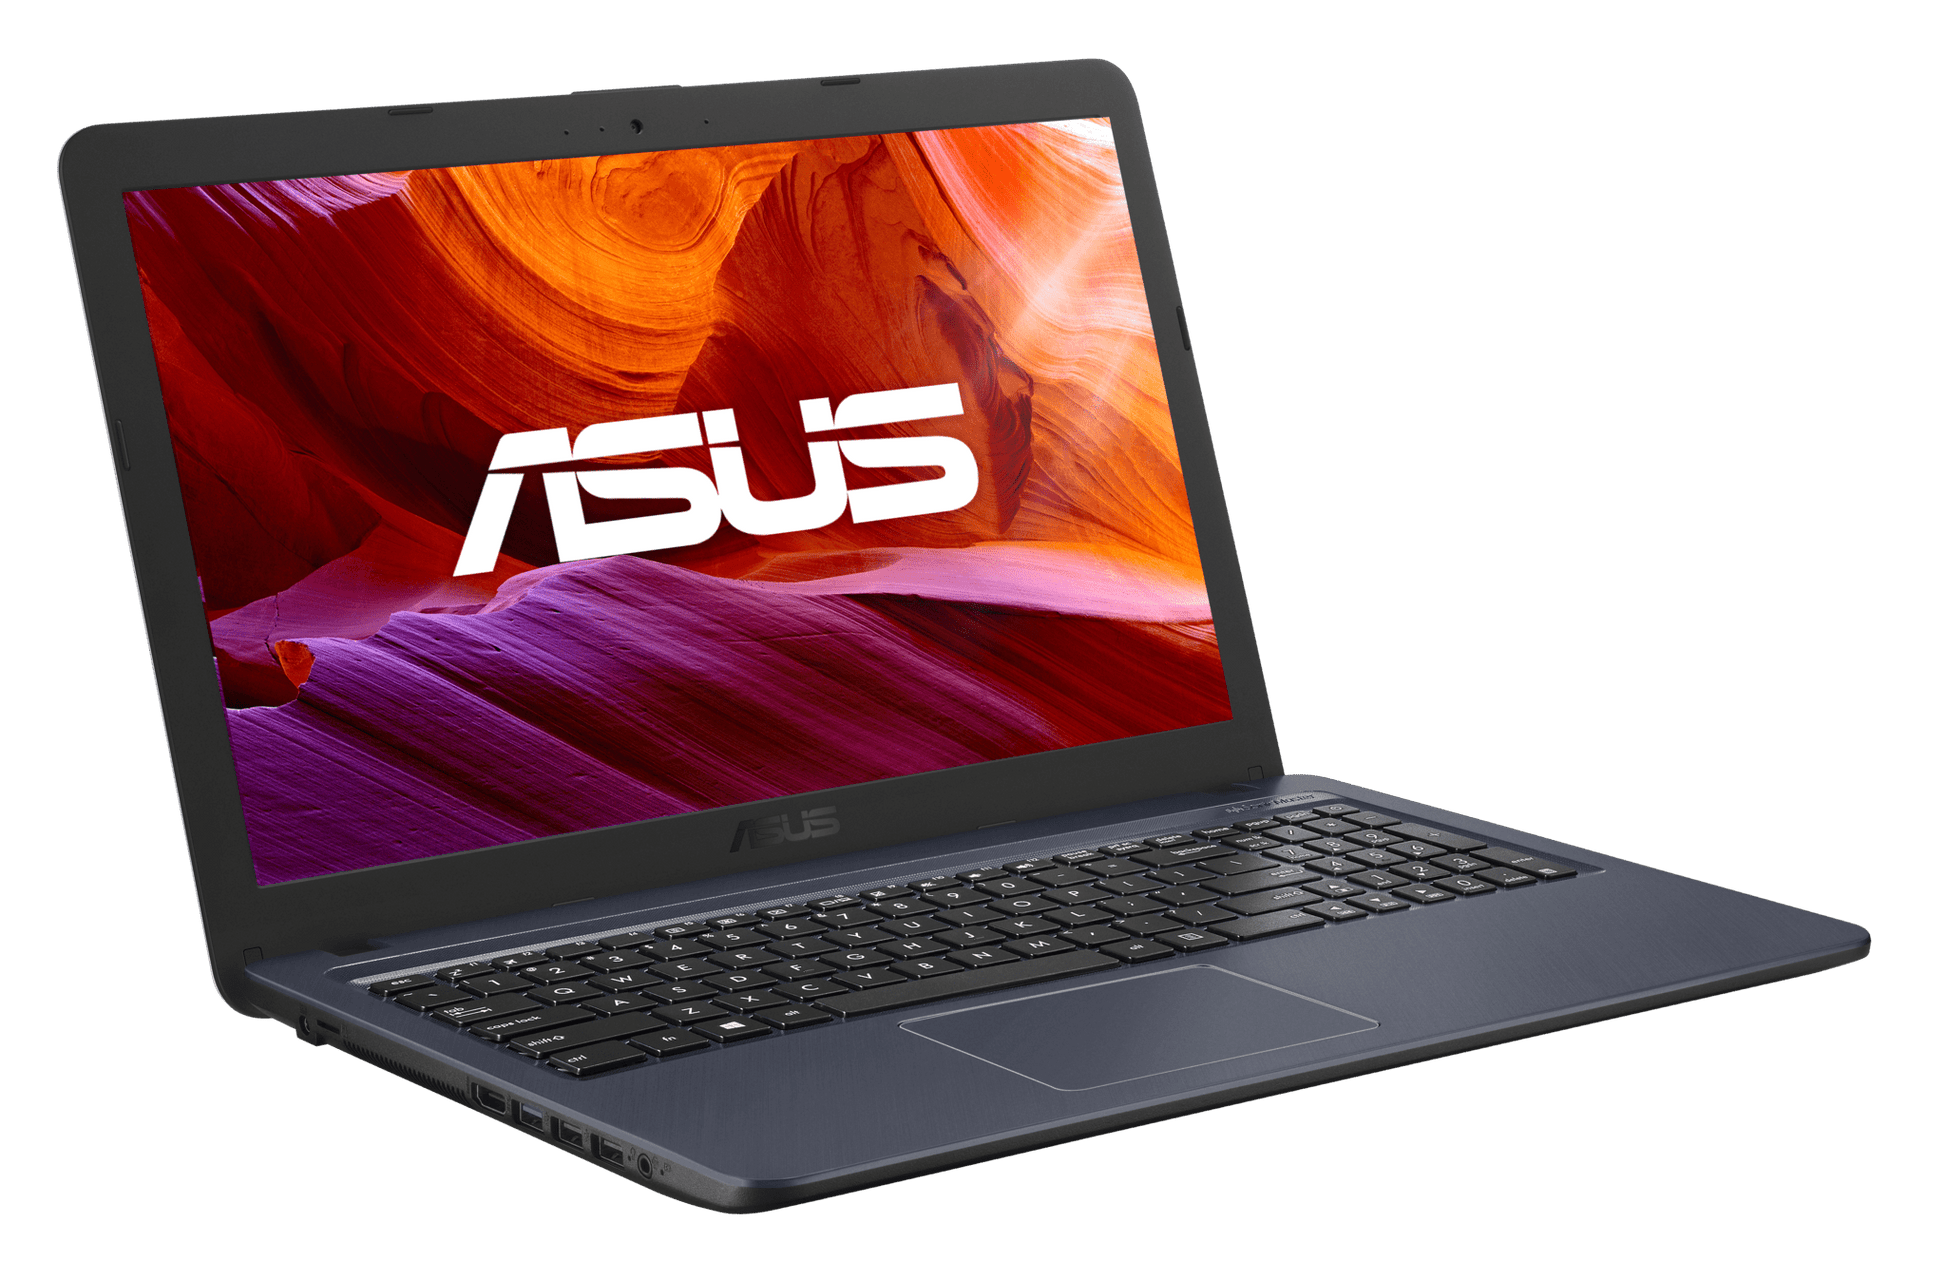 Notebook Asus laptop X543UA-GQ2087T Intel Core I3-7020U - 4GB DDR4 - 1TB HDD - W10 - 15.6 HD - Soundata S.A.